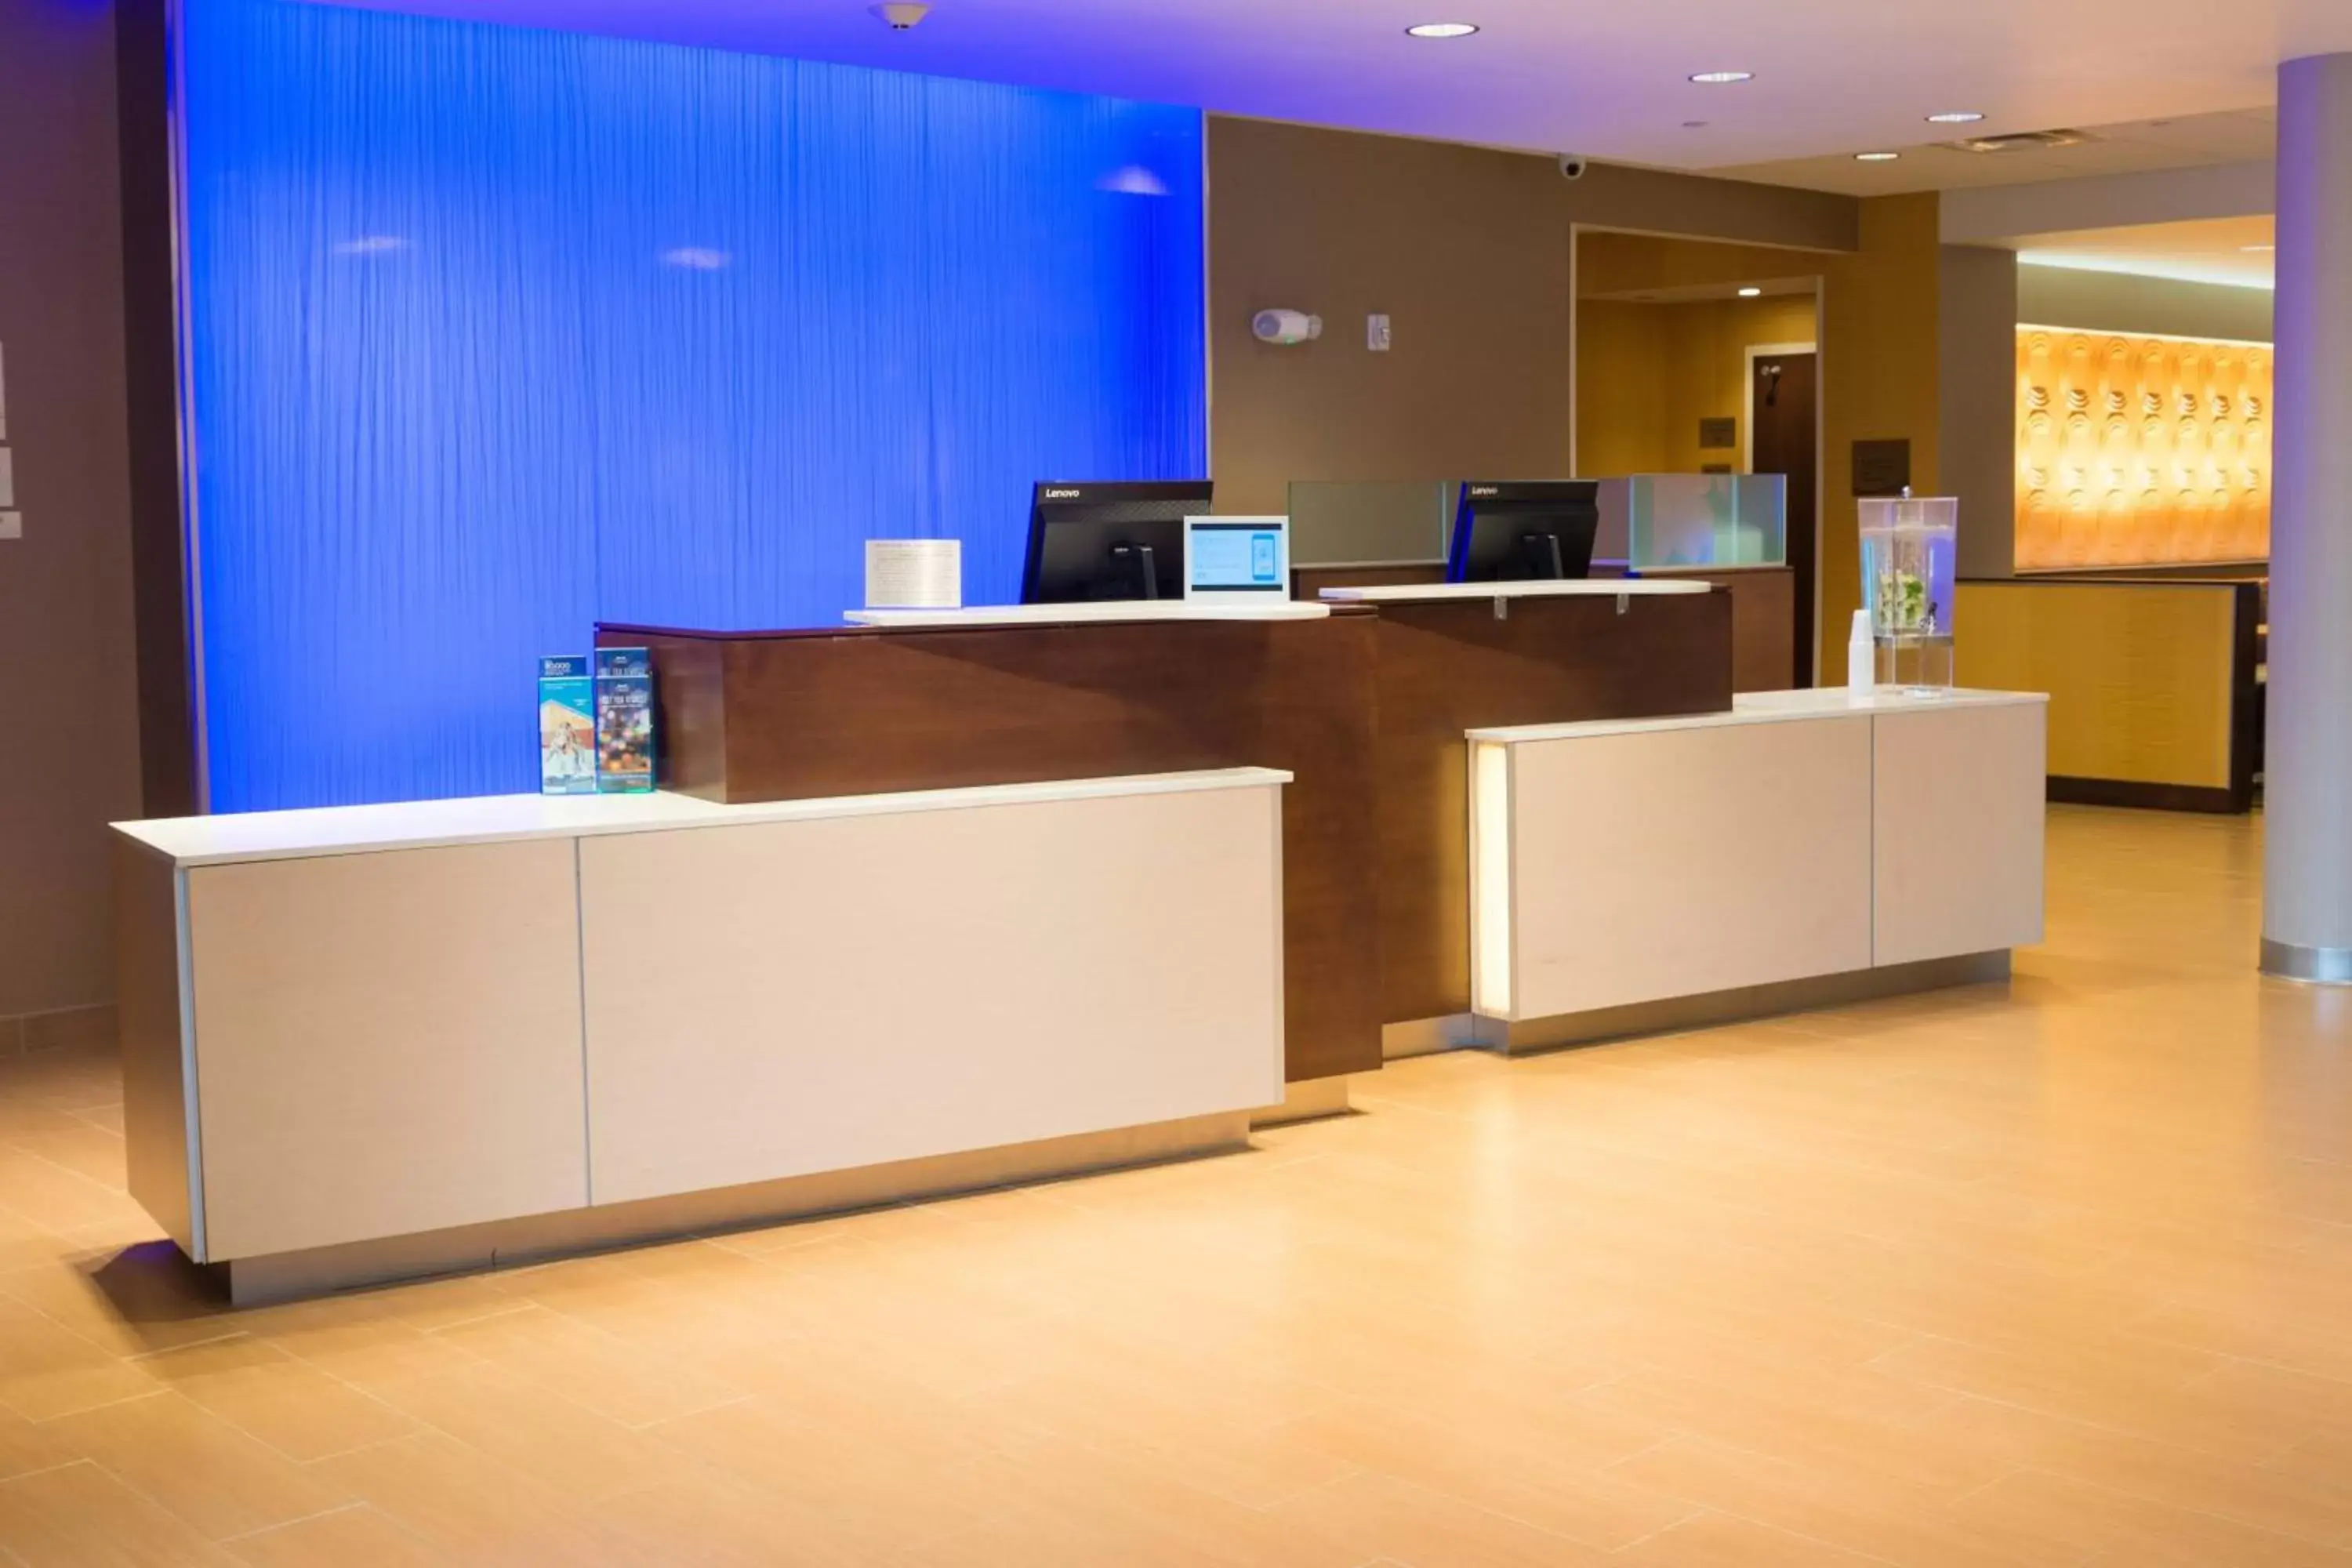 Lobby or reception, Lobby/Reception in Fairfield Inn & Suites by Marriott Dickson